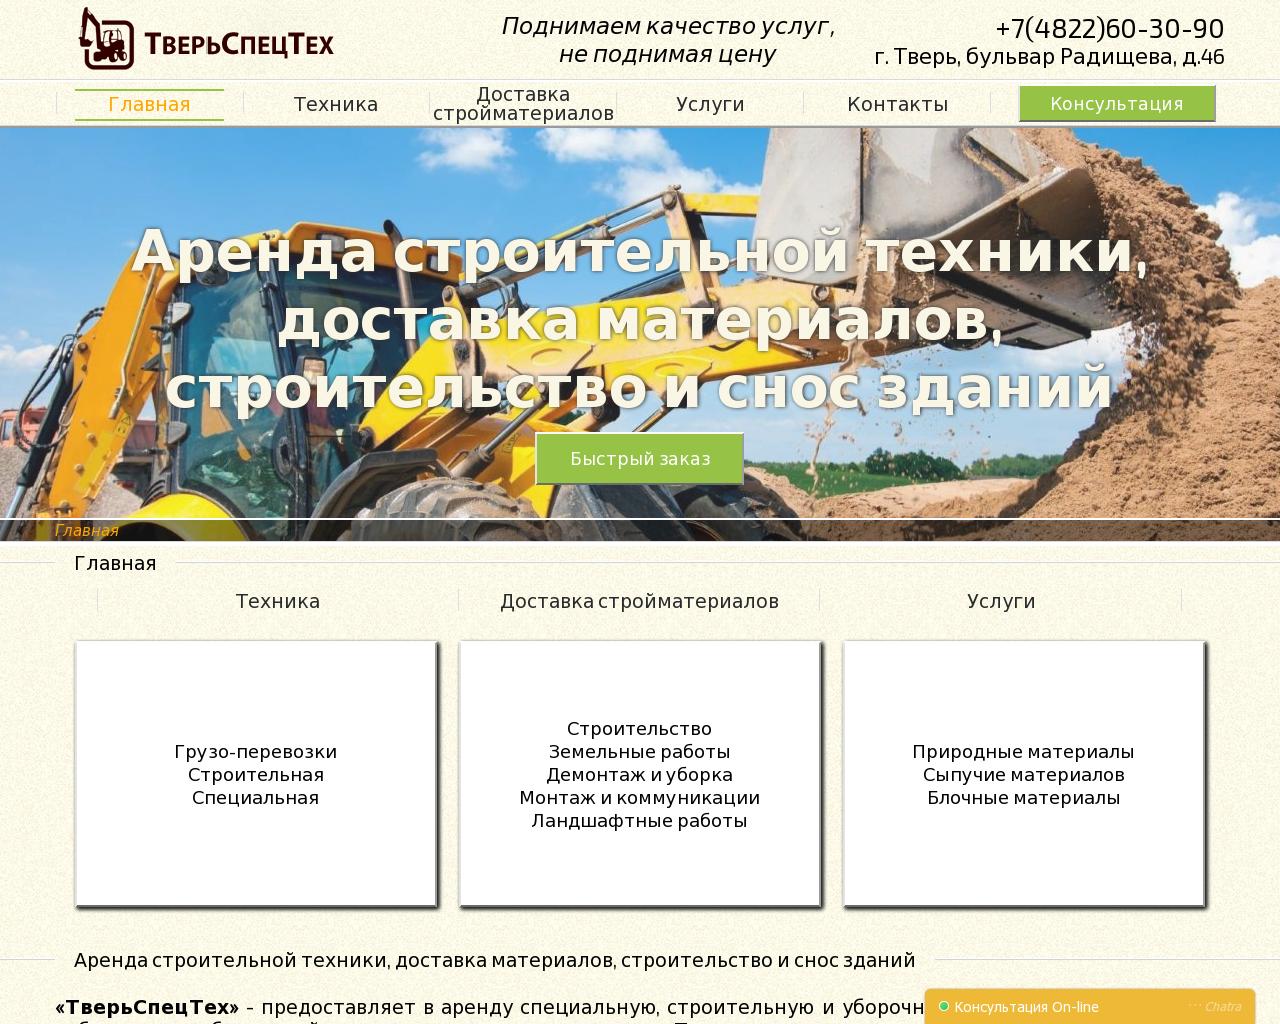 Изображение сайта tst-tver.ru в разрешении 1280x1024